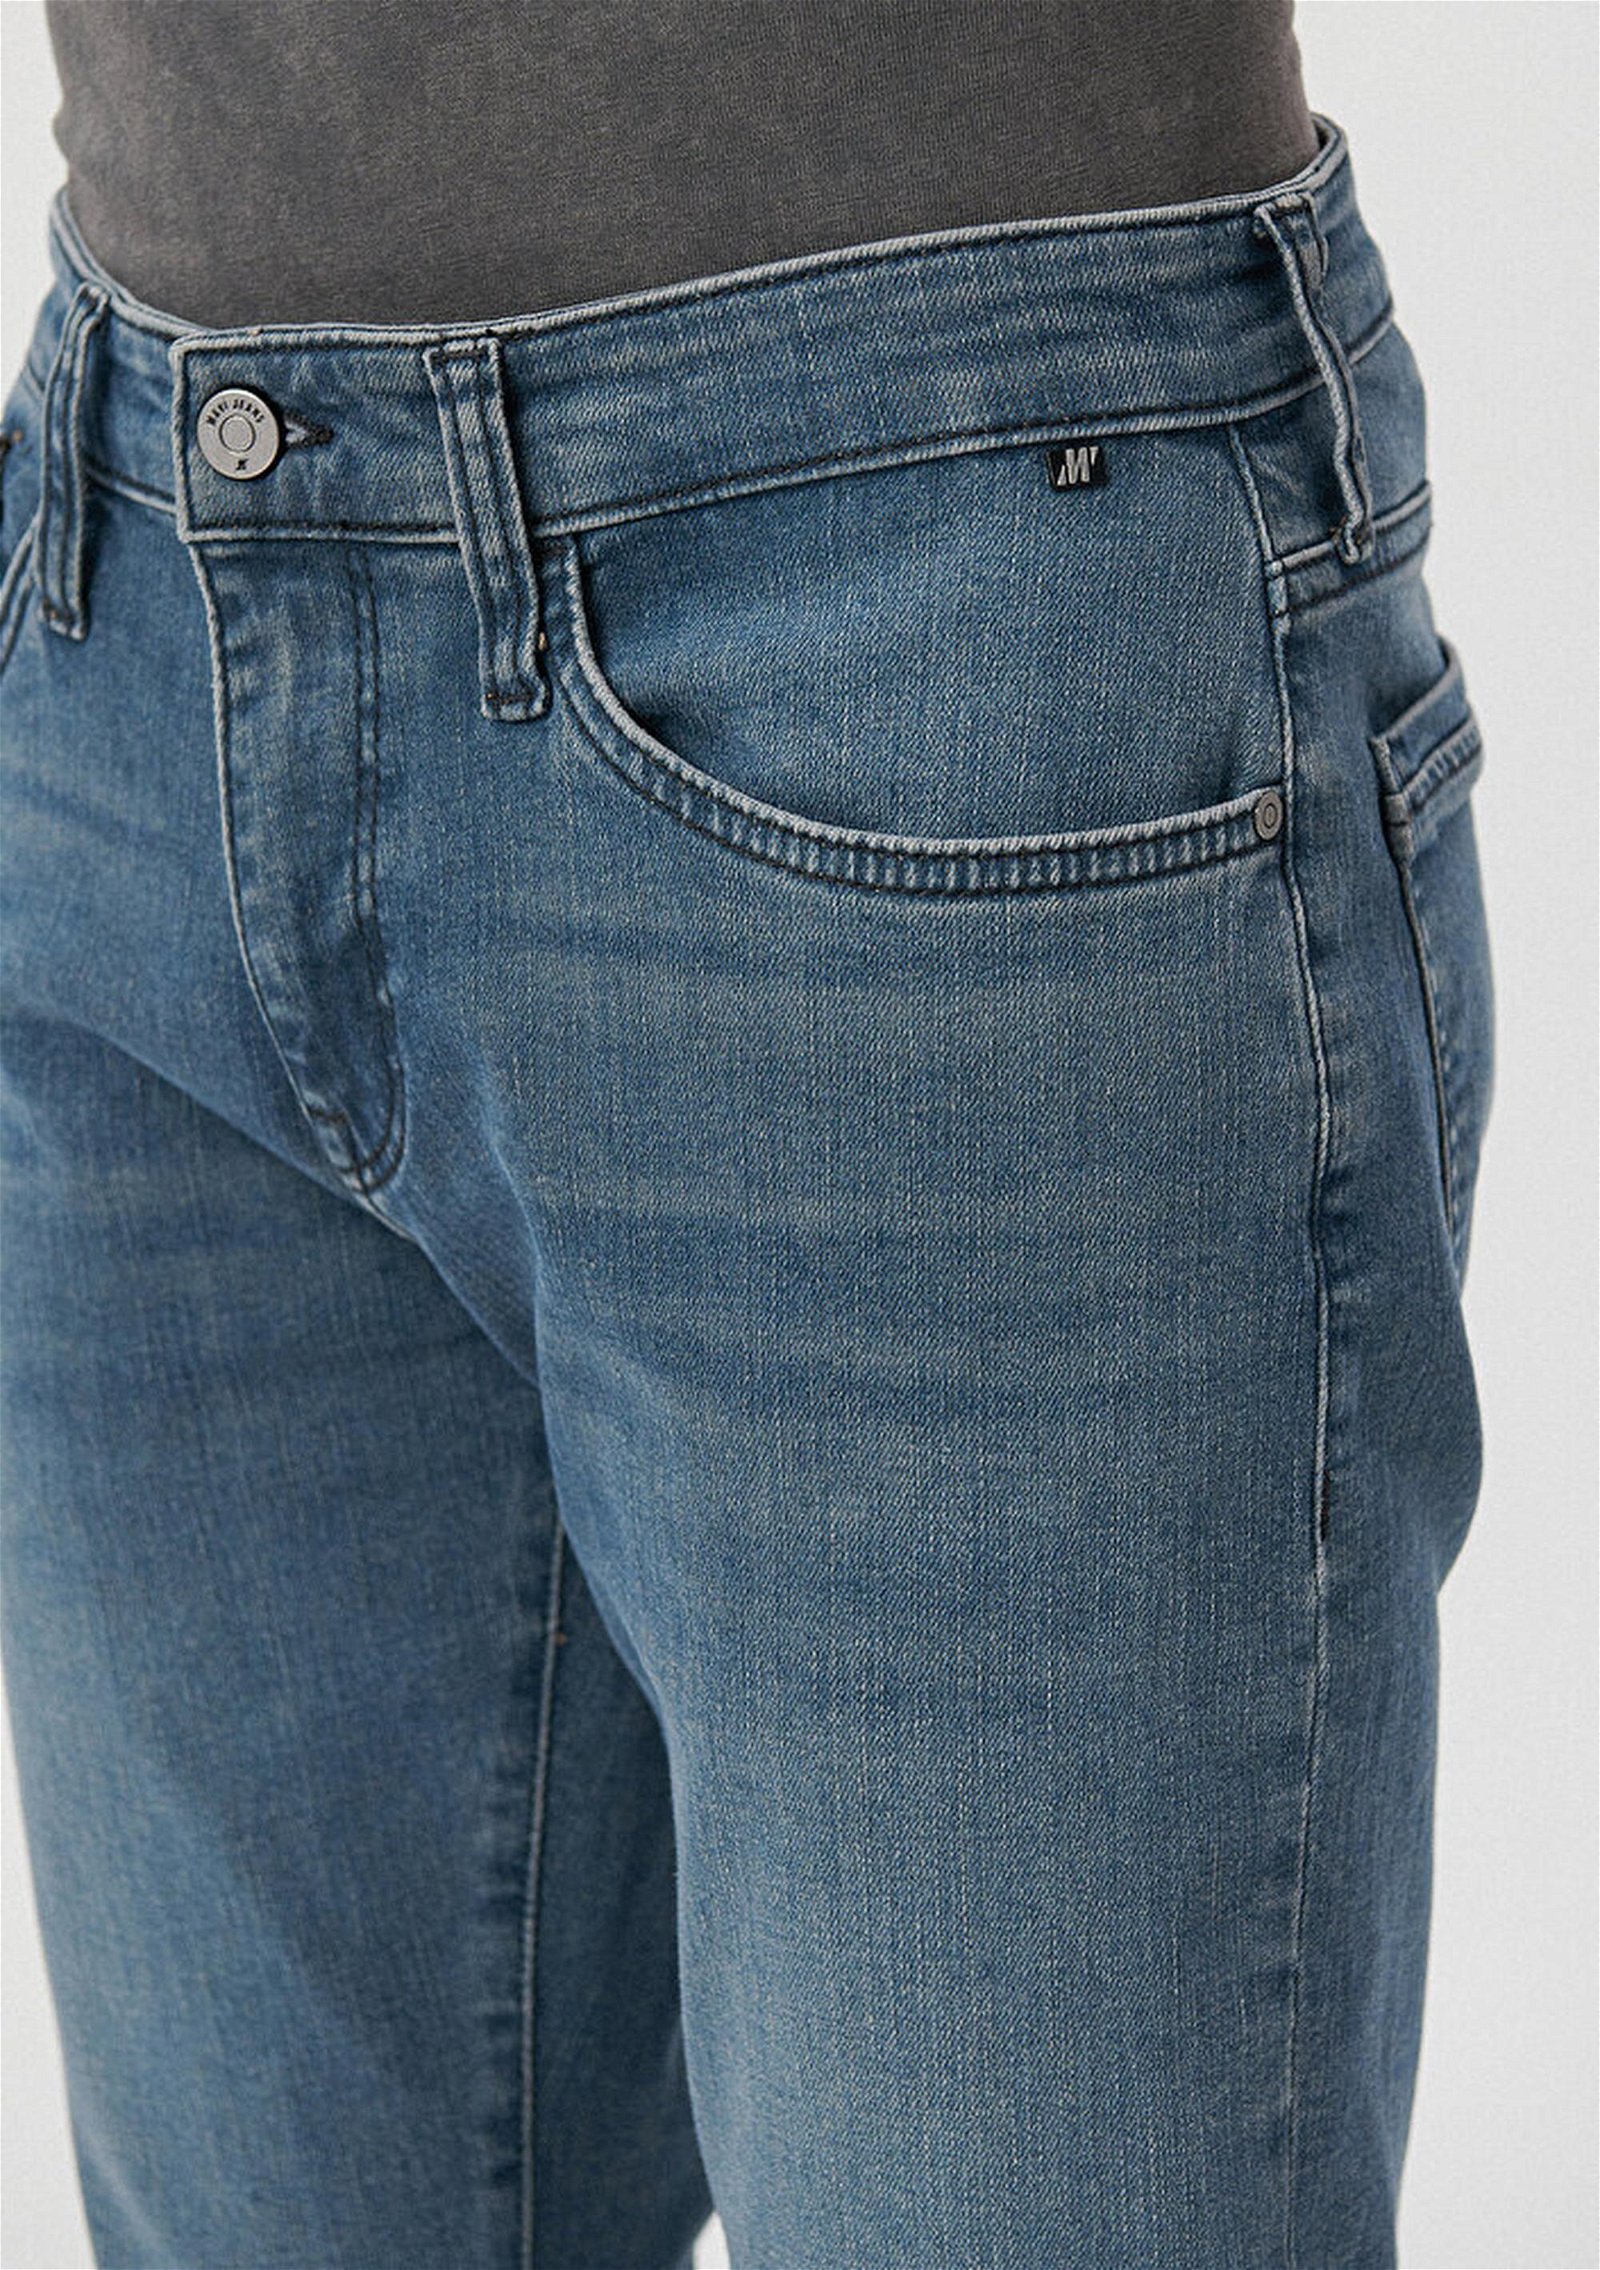 Mavi Marcus Koyu Mavi Premium Jean Pantolon 0035185210